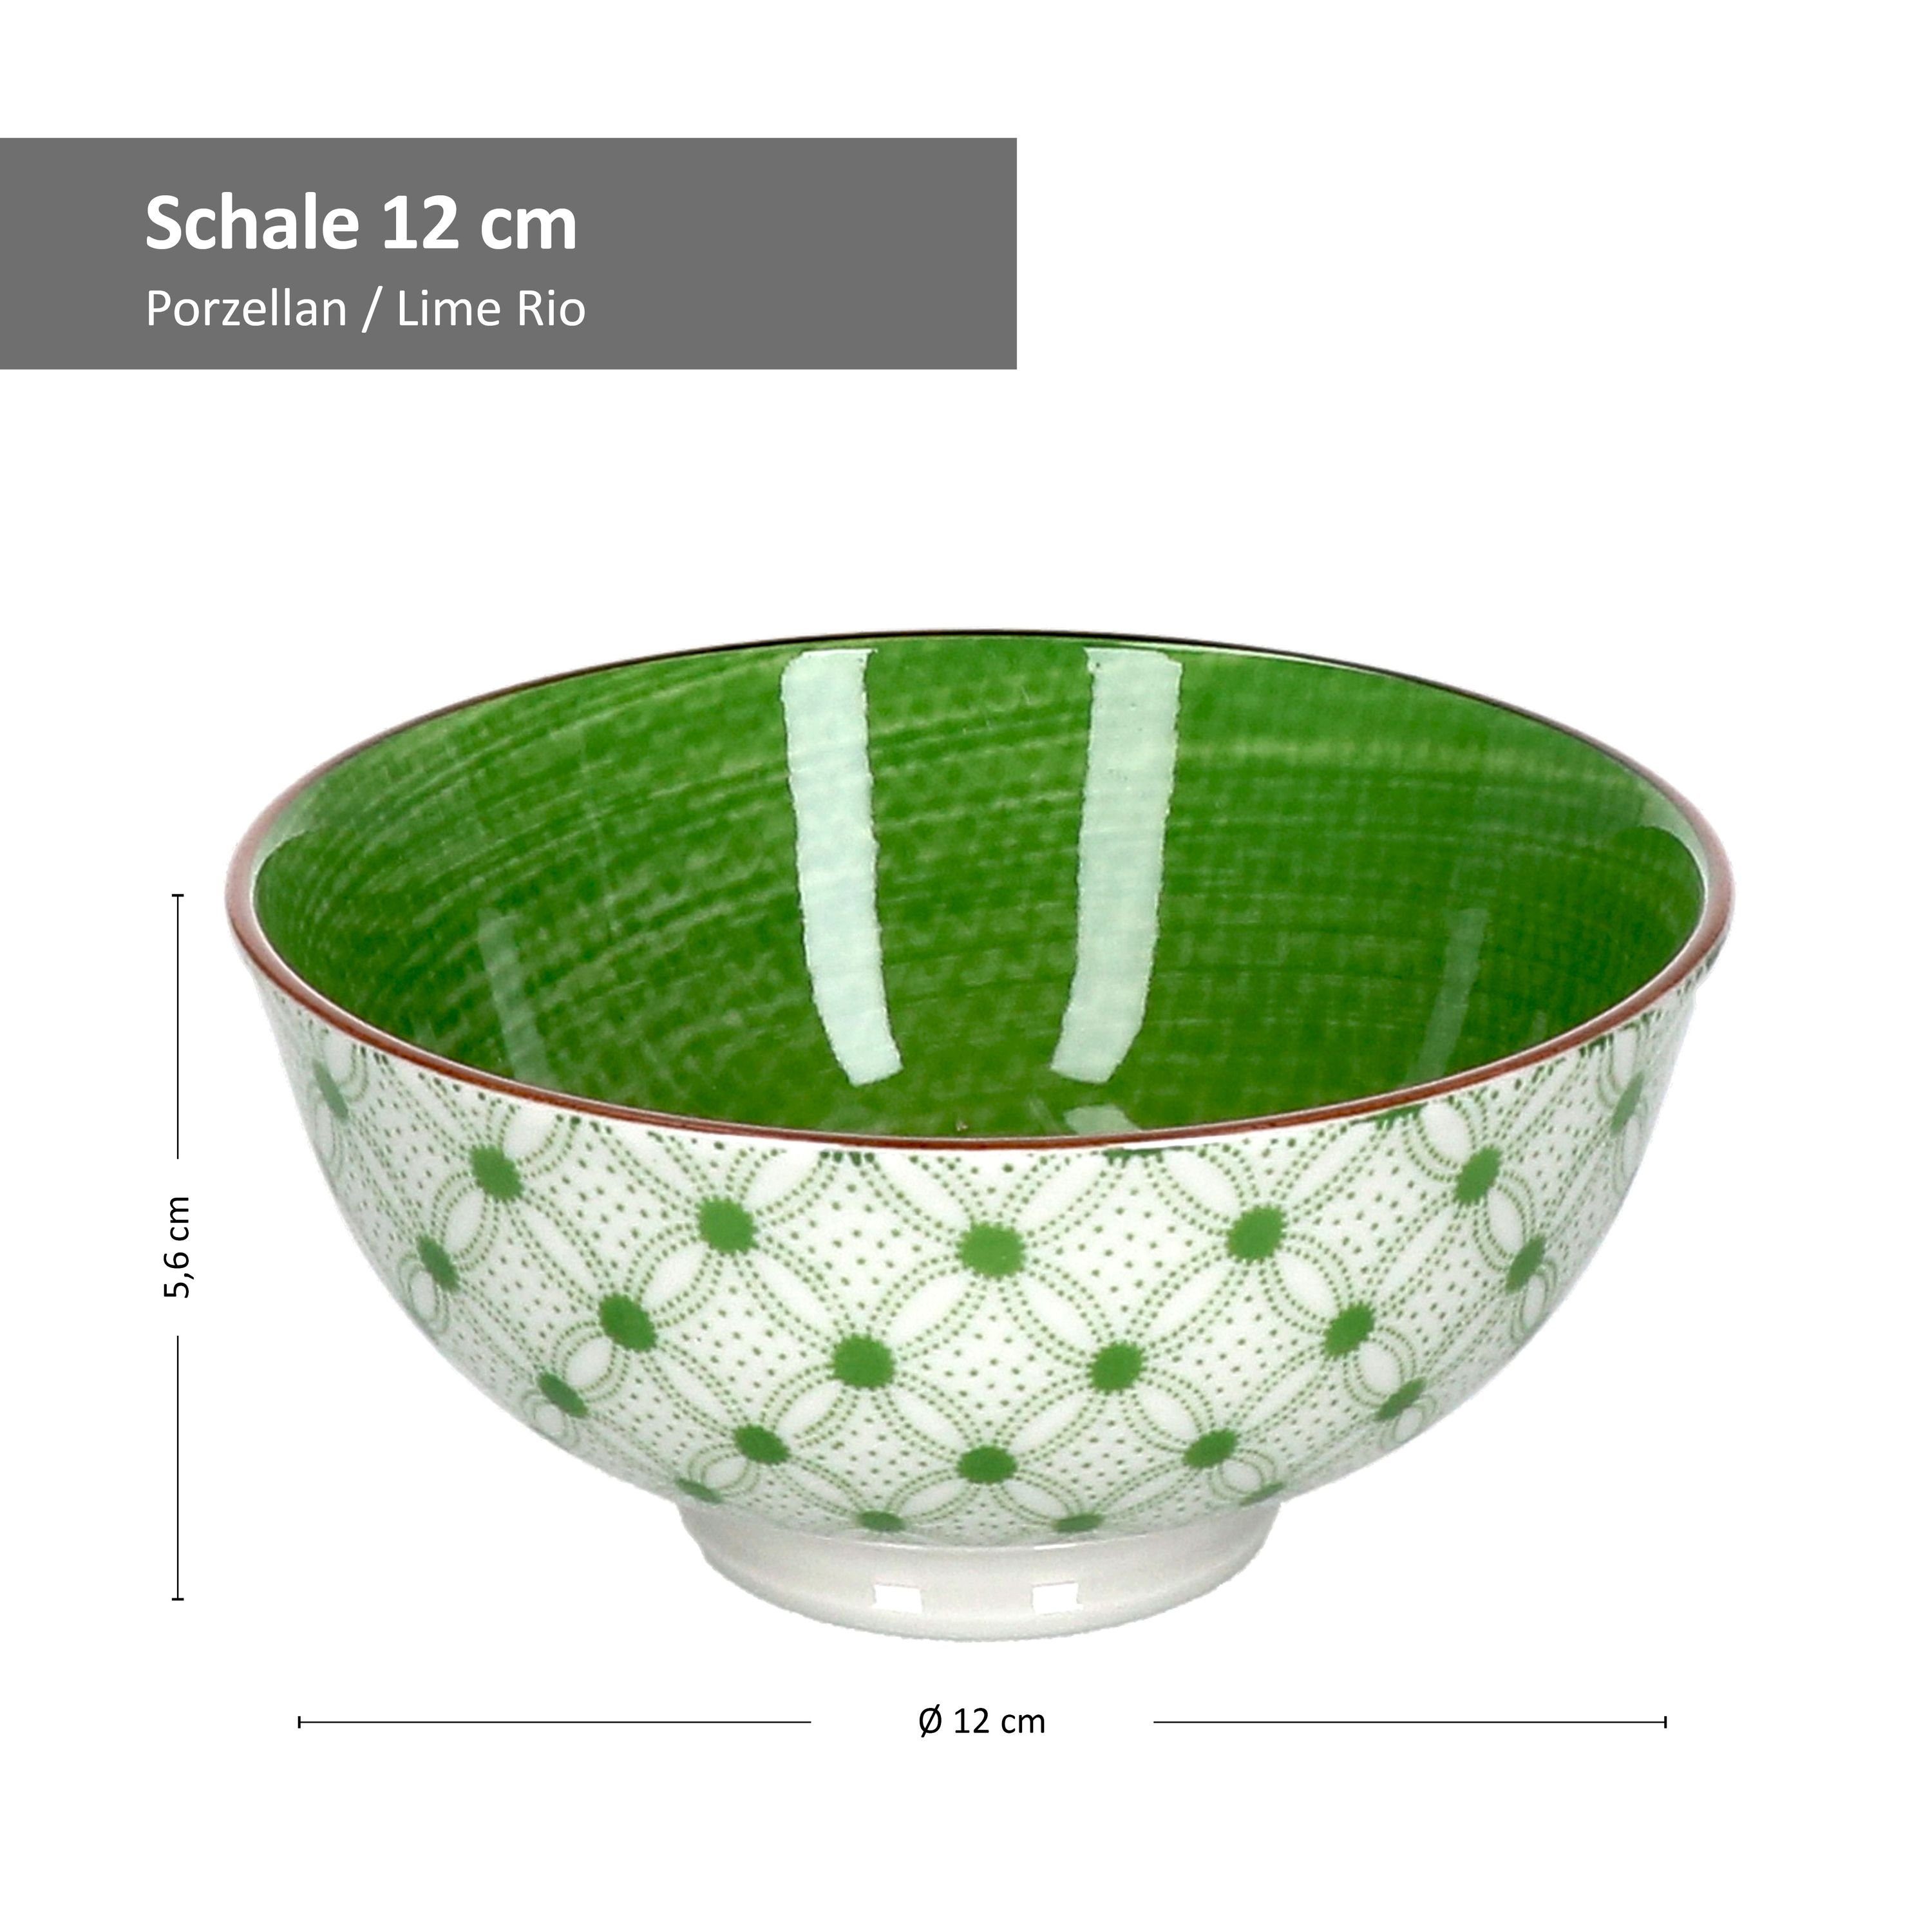 Breker Porzellan & Ritzenhoff 12cm Rio 744781, Servierschale Ritzenhoff Schale 4er Lime - Set